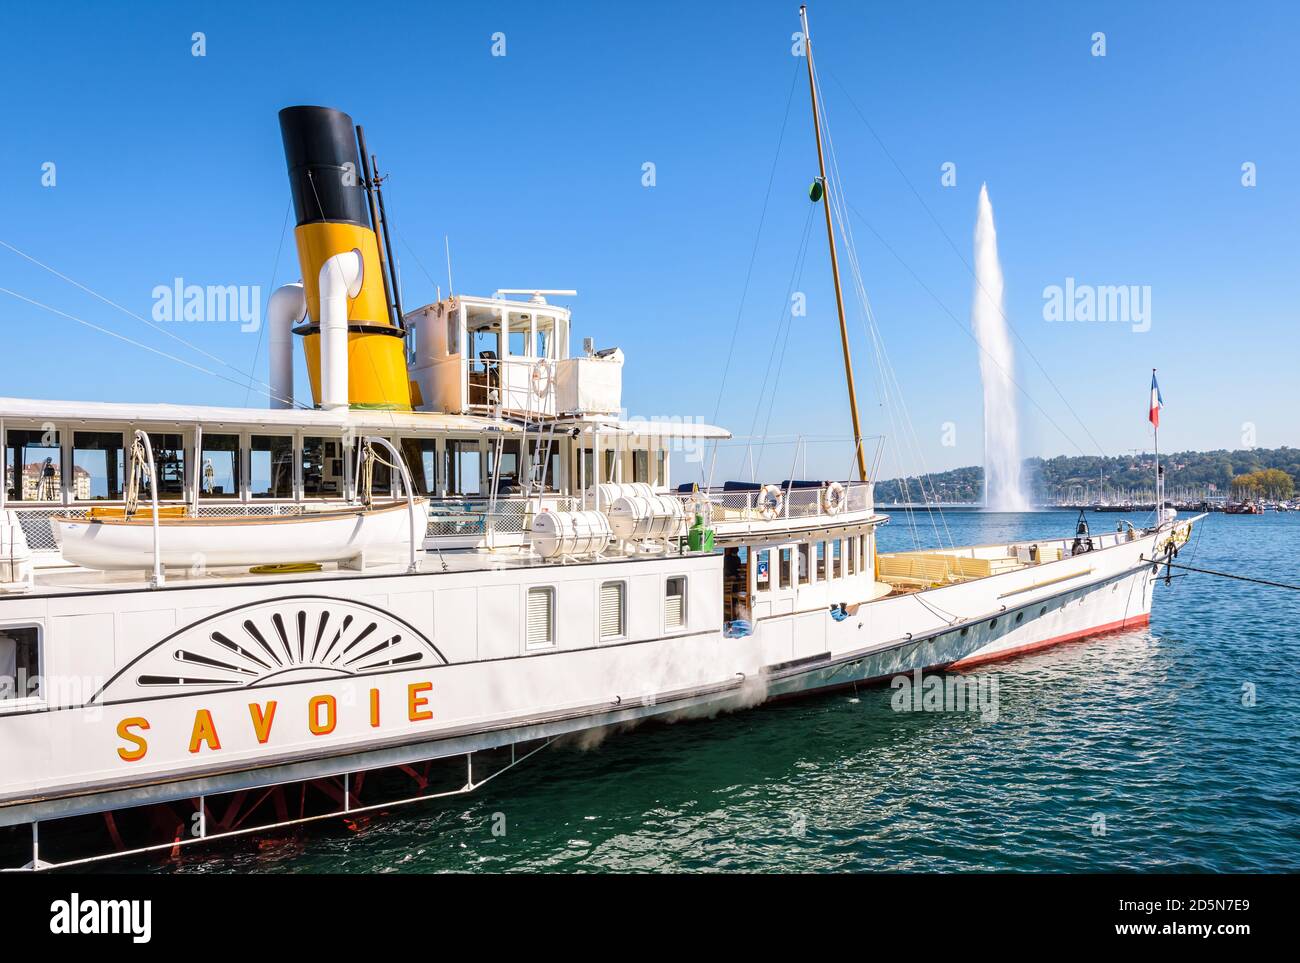 Le bateau à aubes « Lavoie », classé monument historique, est amarré dans la baie de Genève, avec la fontaine jet d'eau Jet d'eau au loin. Banque D'Images